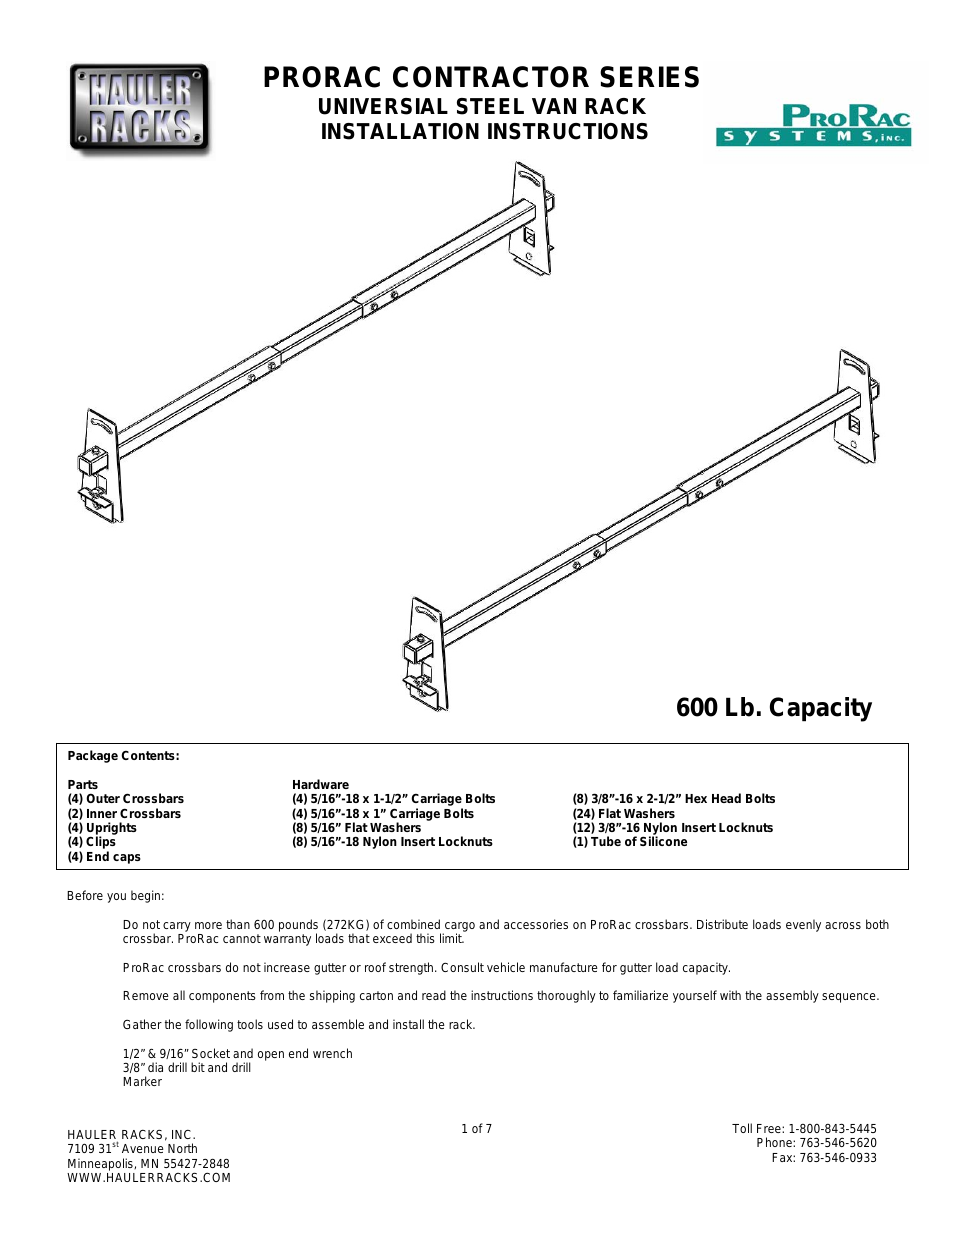 Universal Steel Van Rack (SV2-1)